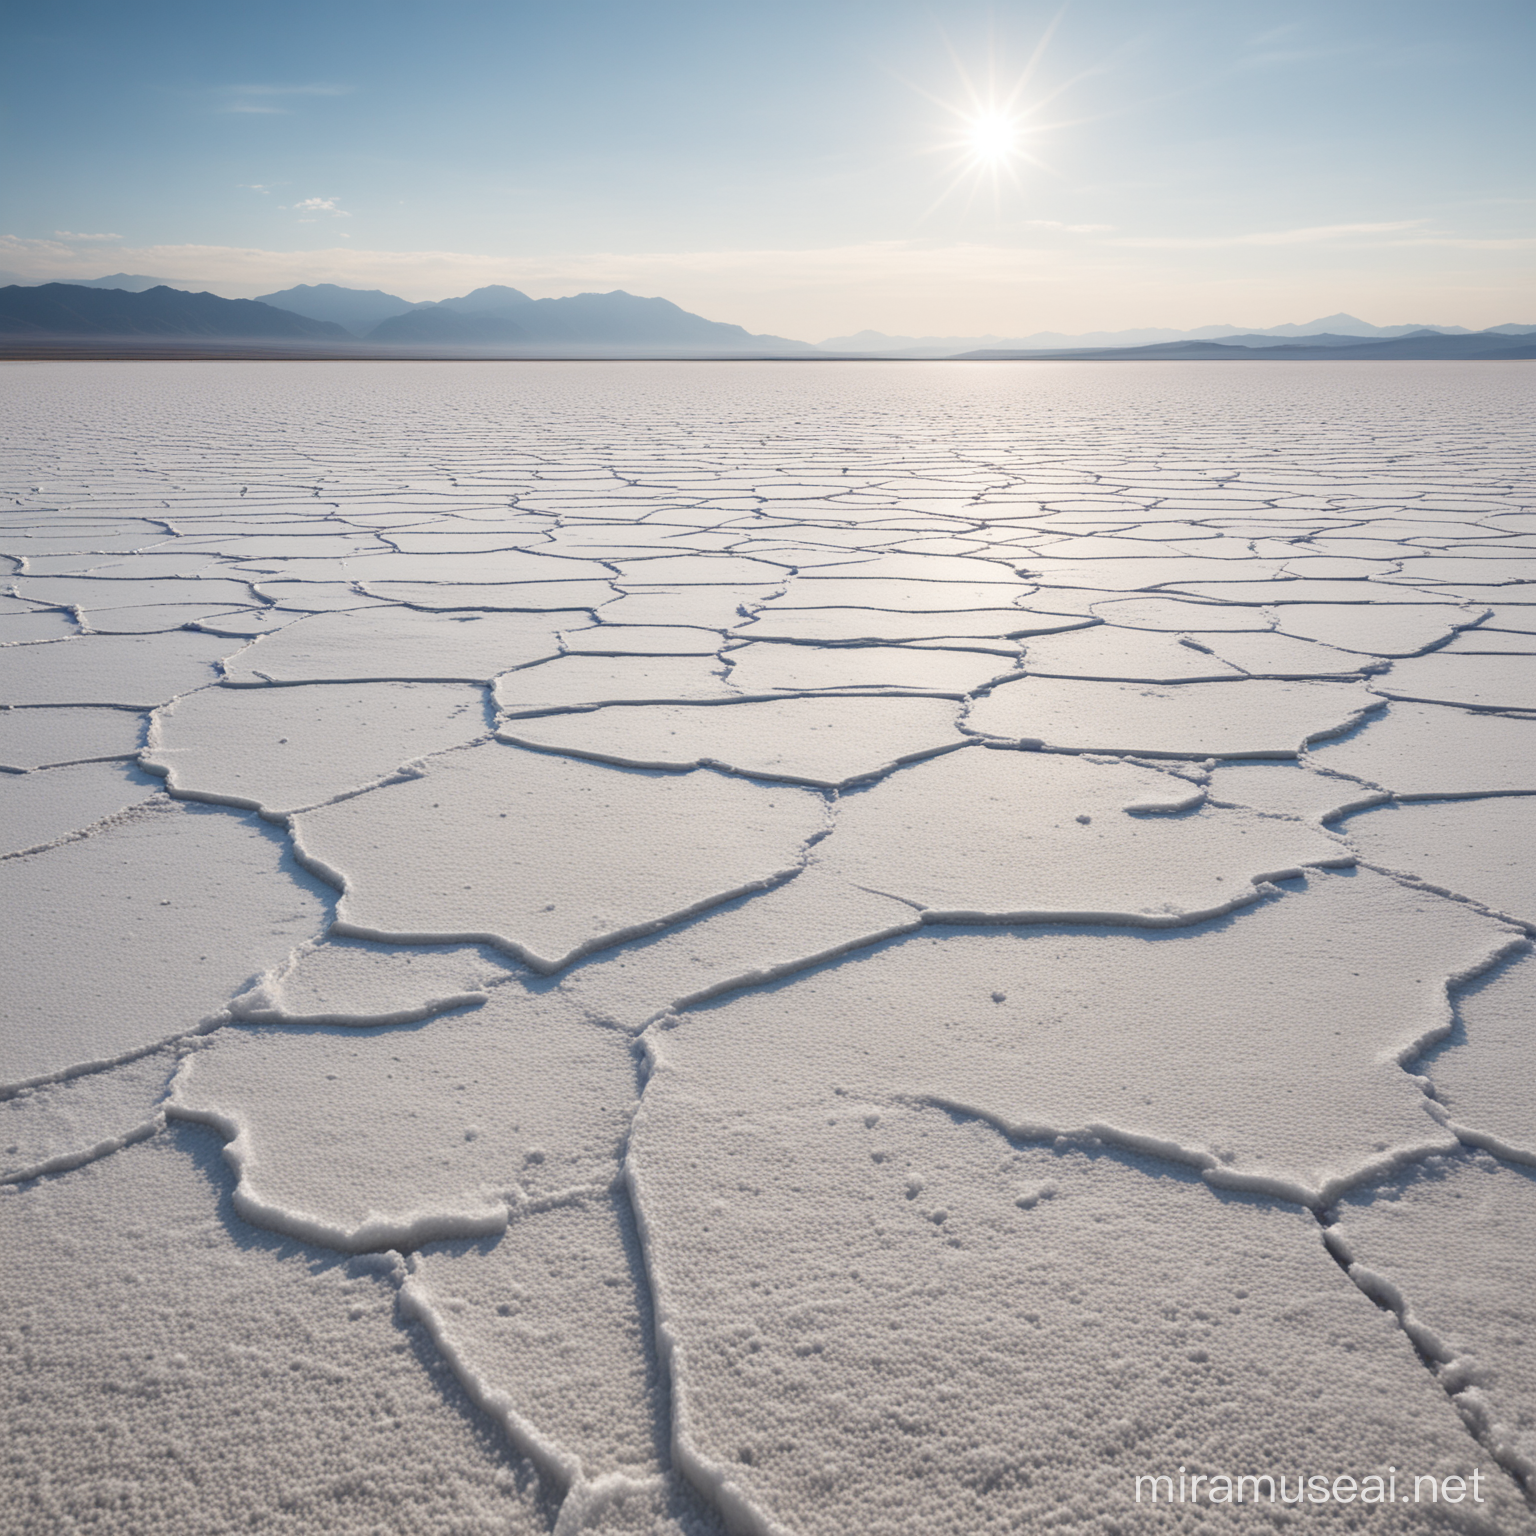 Vast Salt Flat Landscape for Documentary Film